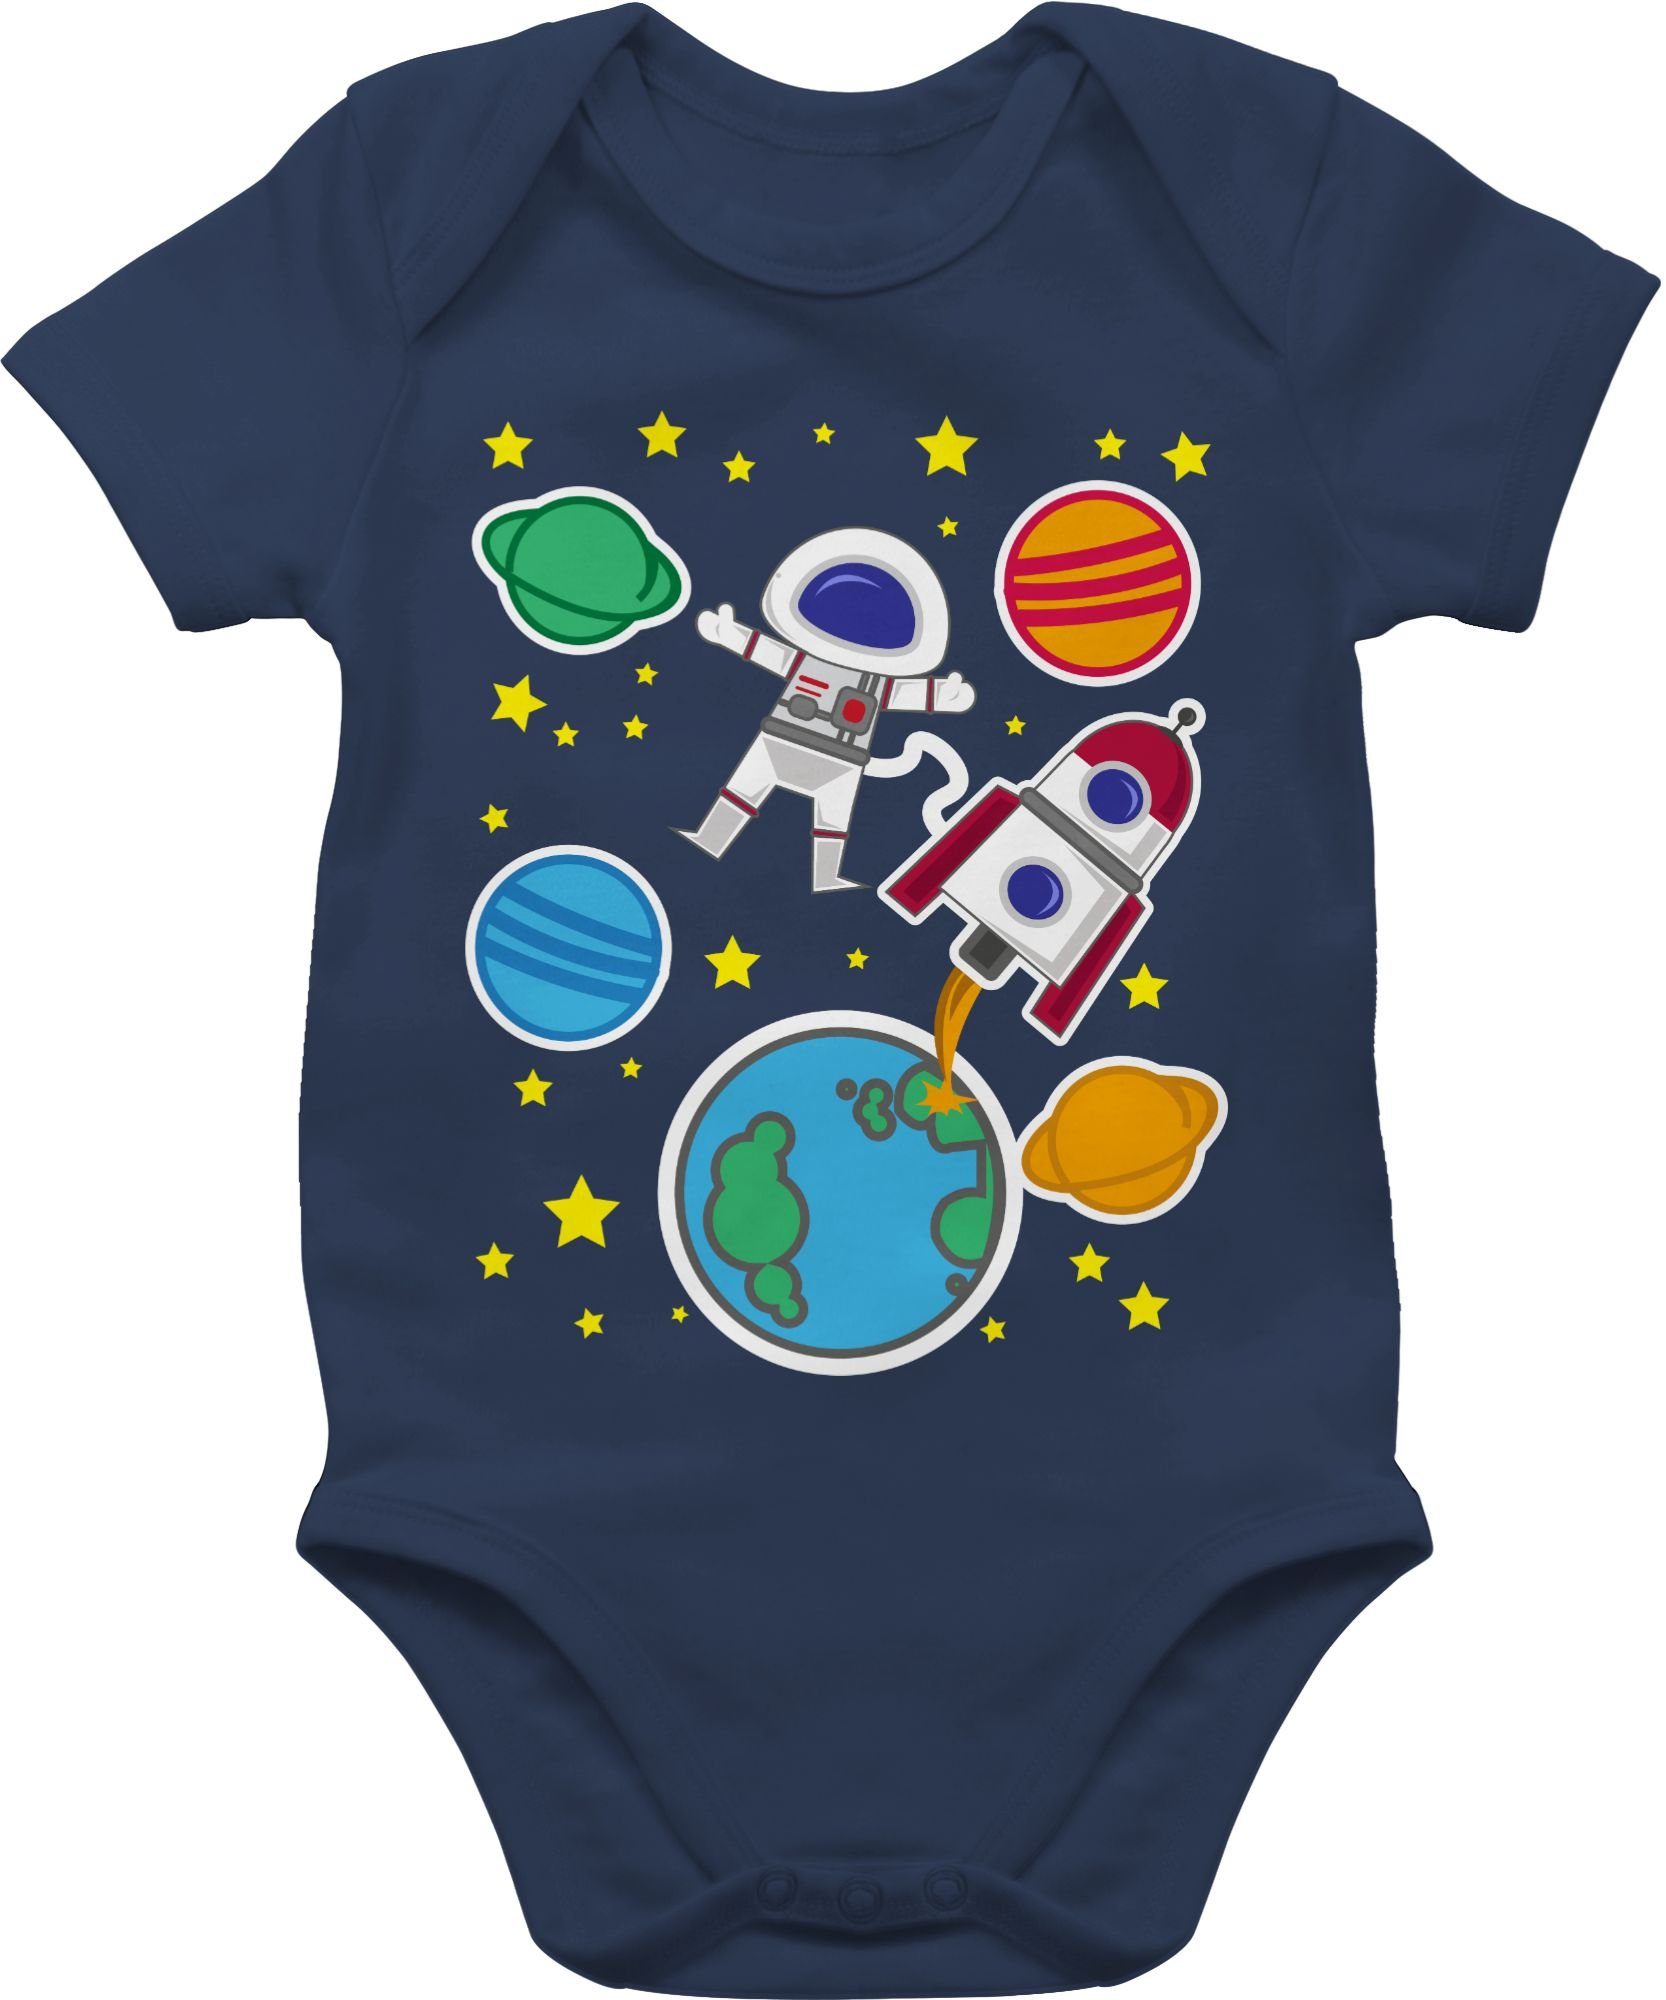 Shirtracer Shirtbody Weltall mit Astronaut Aktuelle Trends Baby 1 Navy Blau